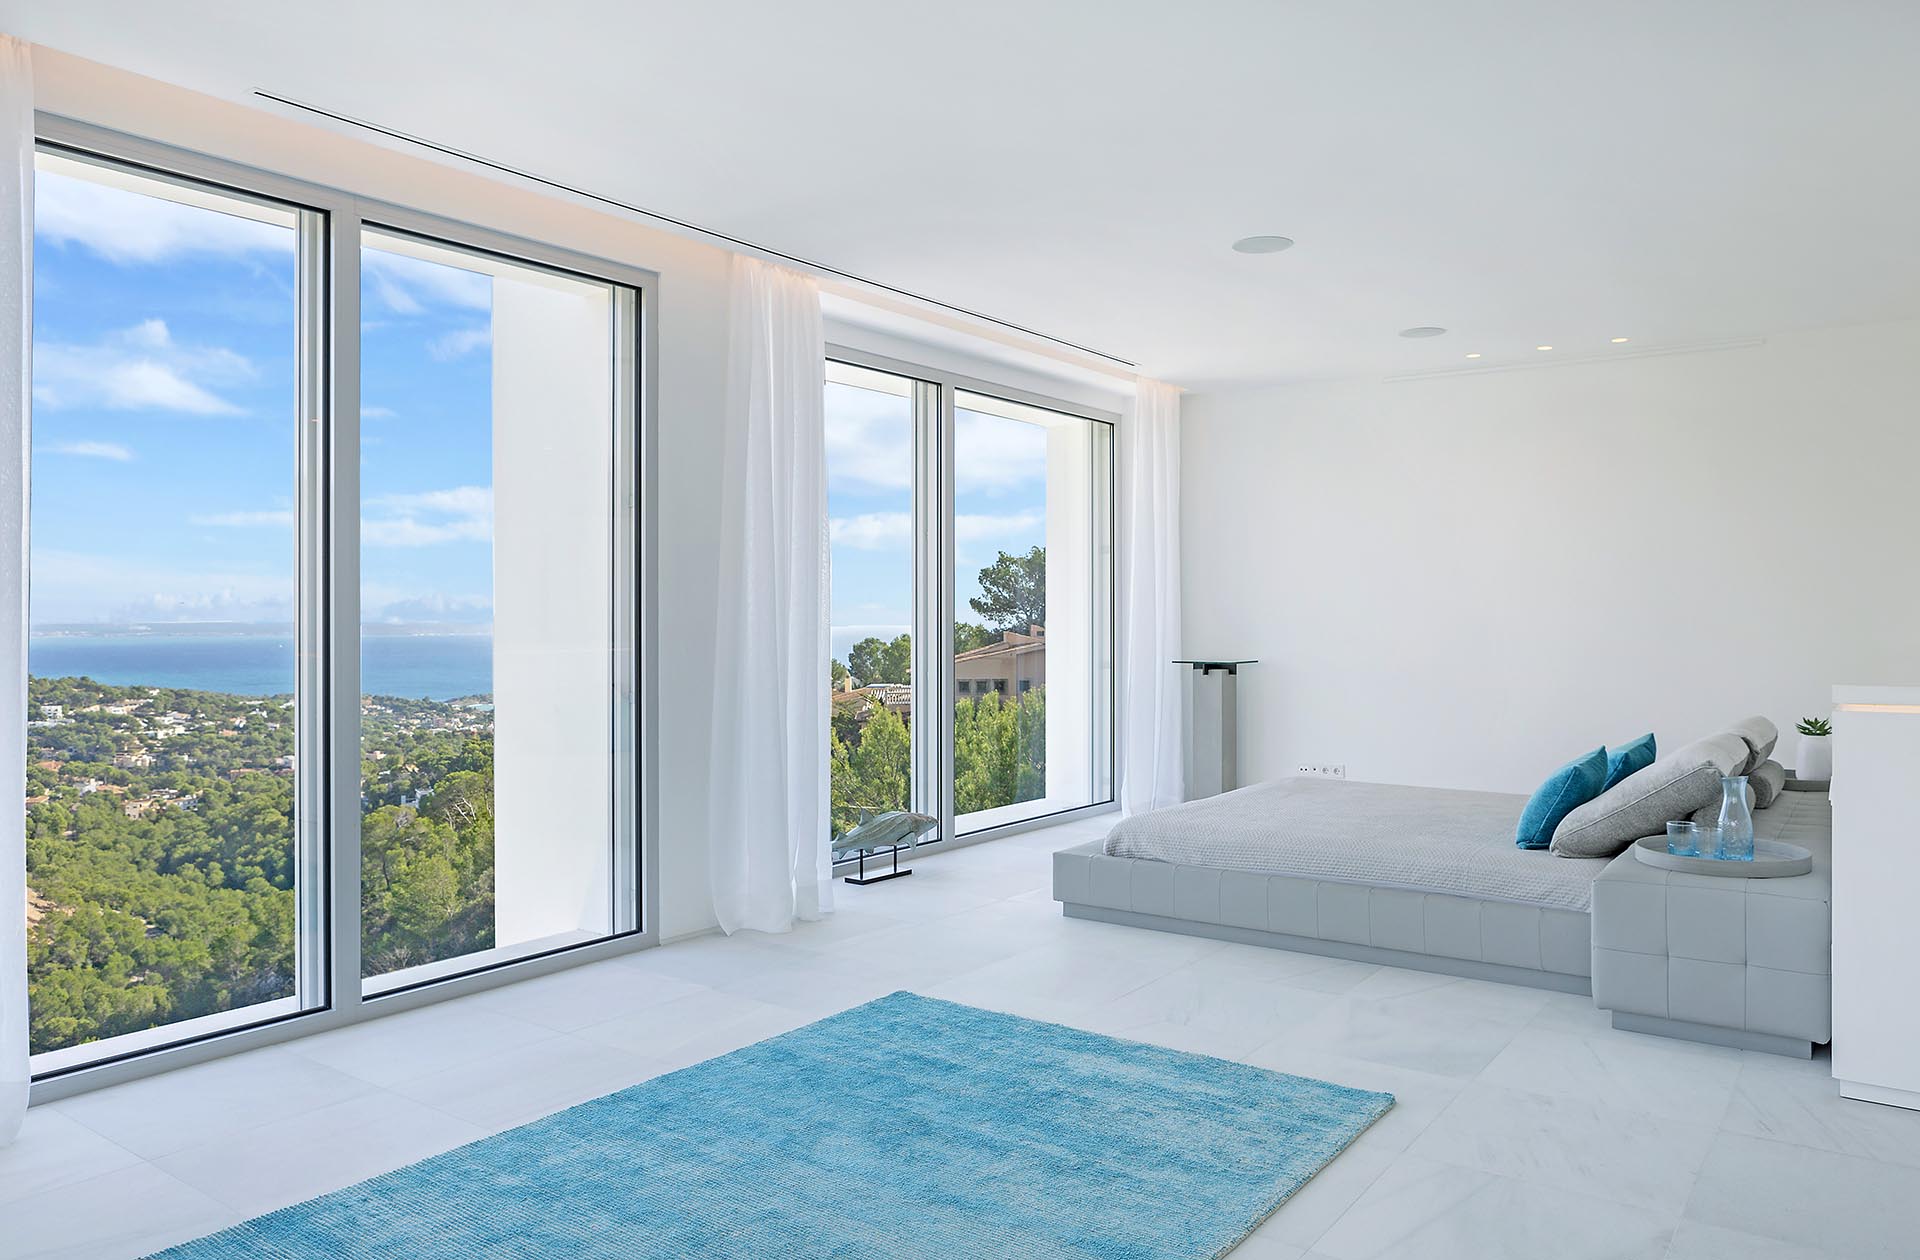 Traumhafte moderne Villa in Costa den Blanes - Hohe Glasfronten